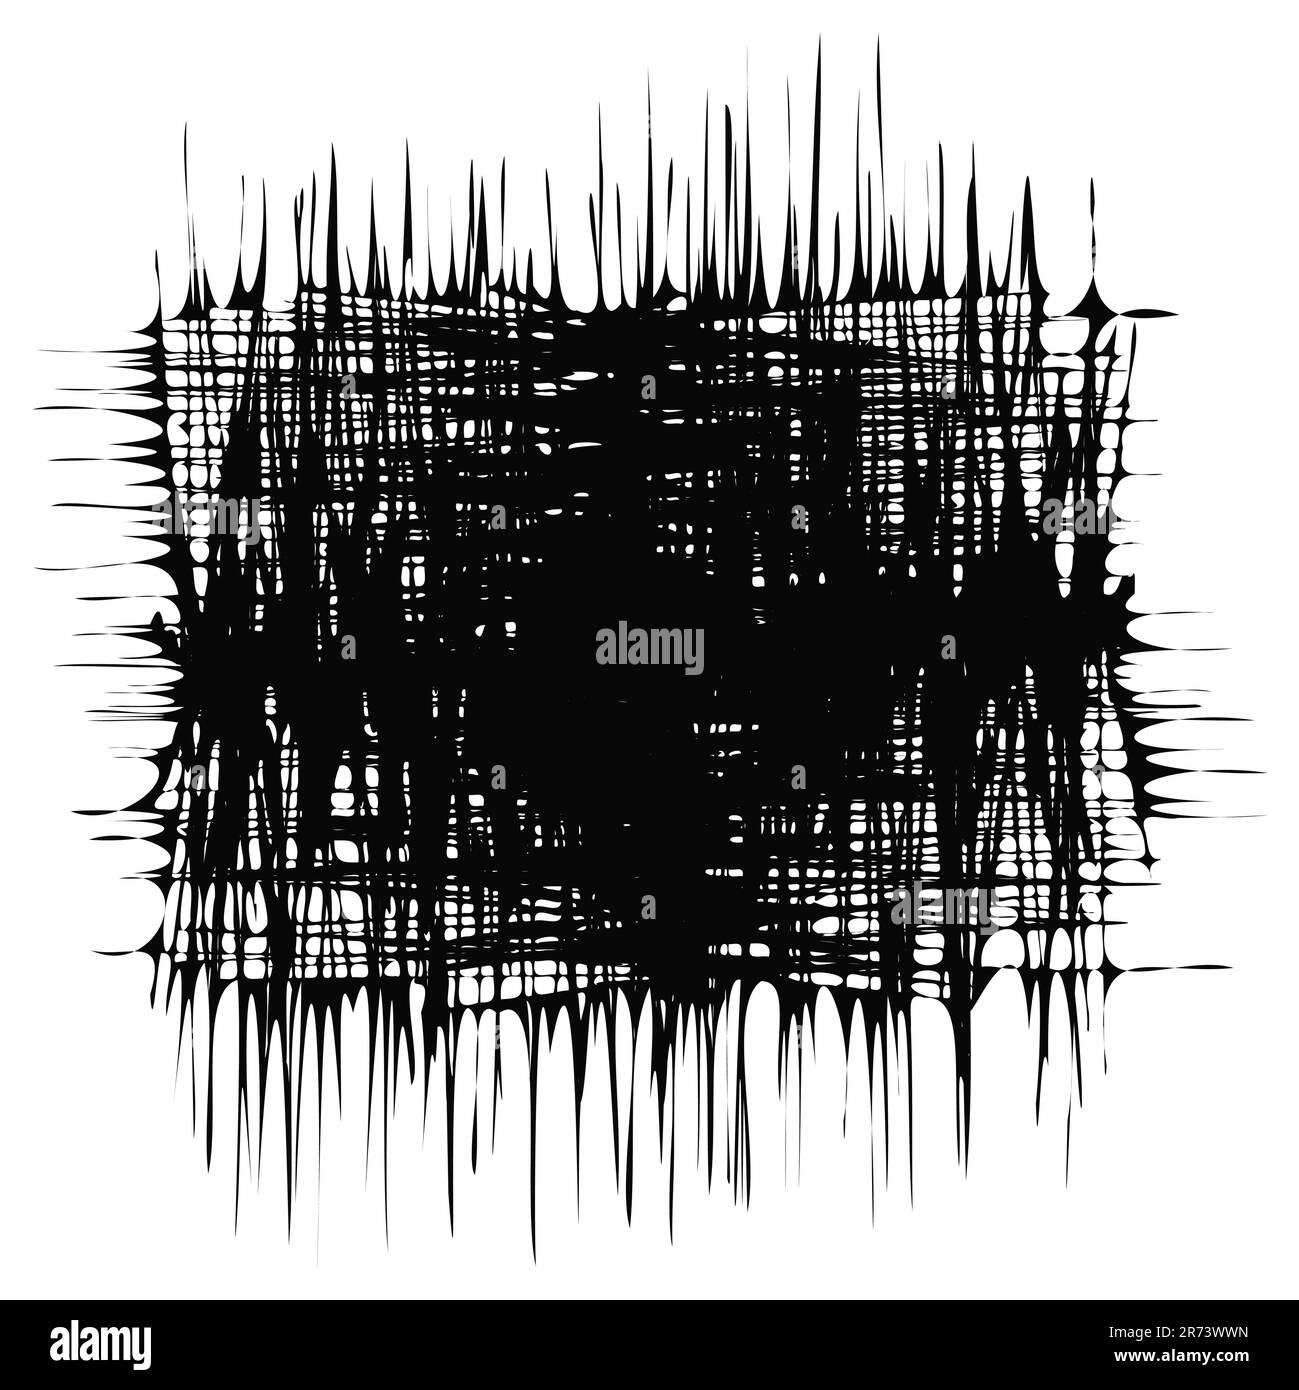 Grunge-Textur Schwarzer abstrakter Hintergrund Scrabble-Muster Design-Element Vektordarstellung isoliert auf weißem Hintergrund Stock Vektor